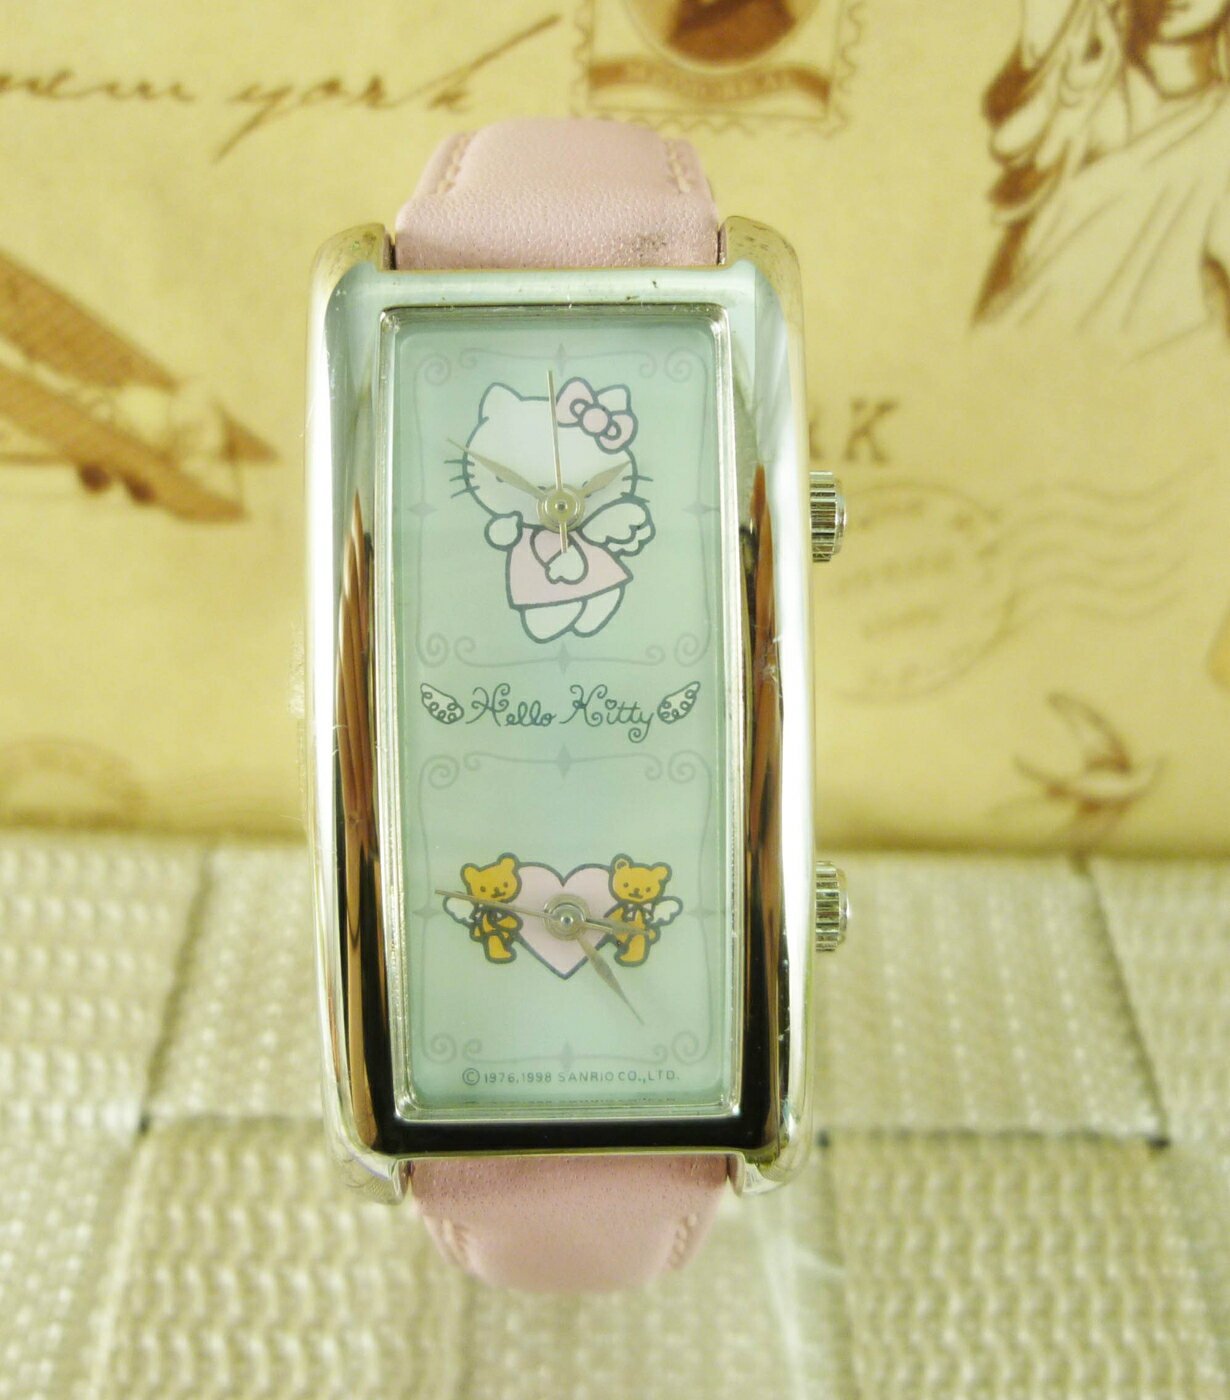 【震撼精品百貨】Hello Kitty 凱蒂貓 手錶-雙時間-天使粉【共1款】 震撼日式精品百貨